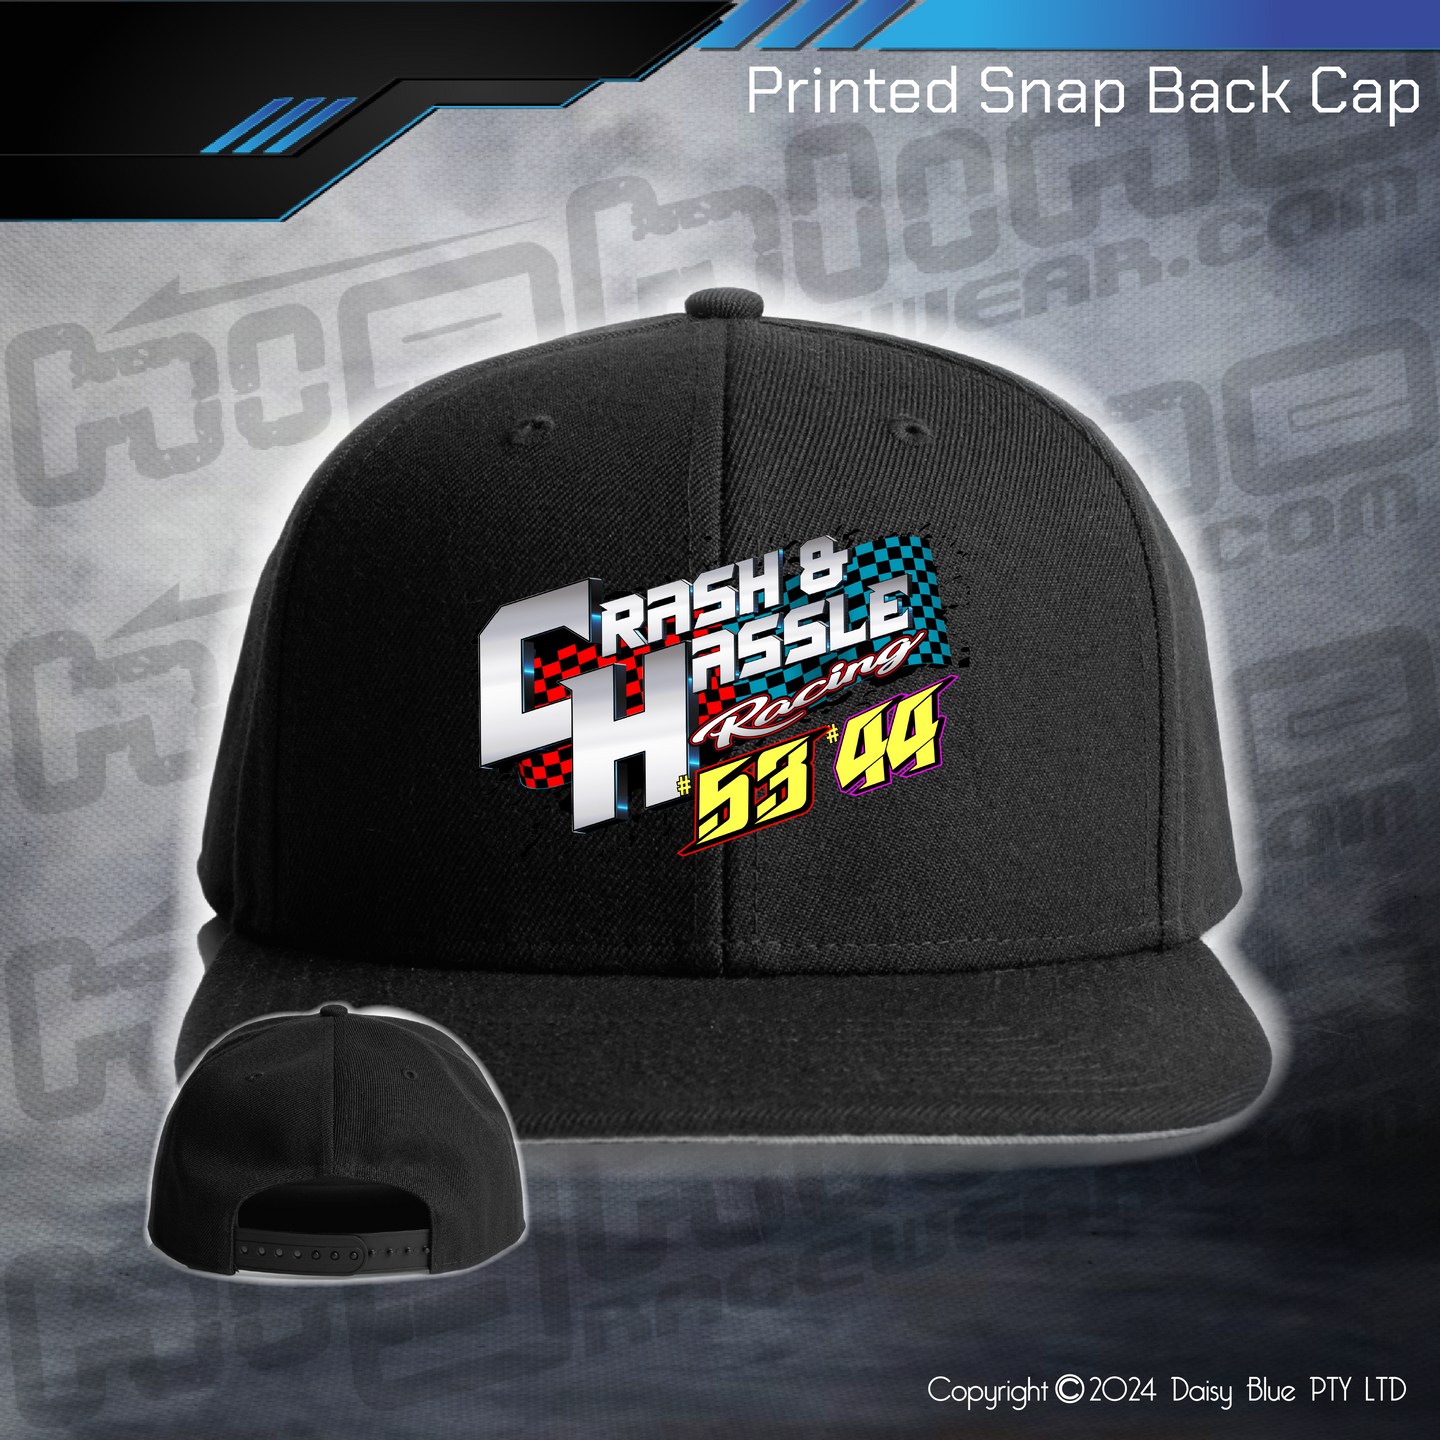 Printed Snap Back CAP - Crash N Hassle Racing